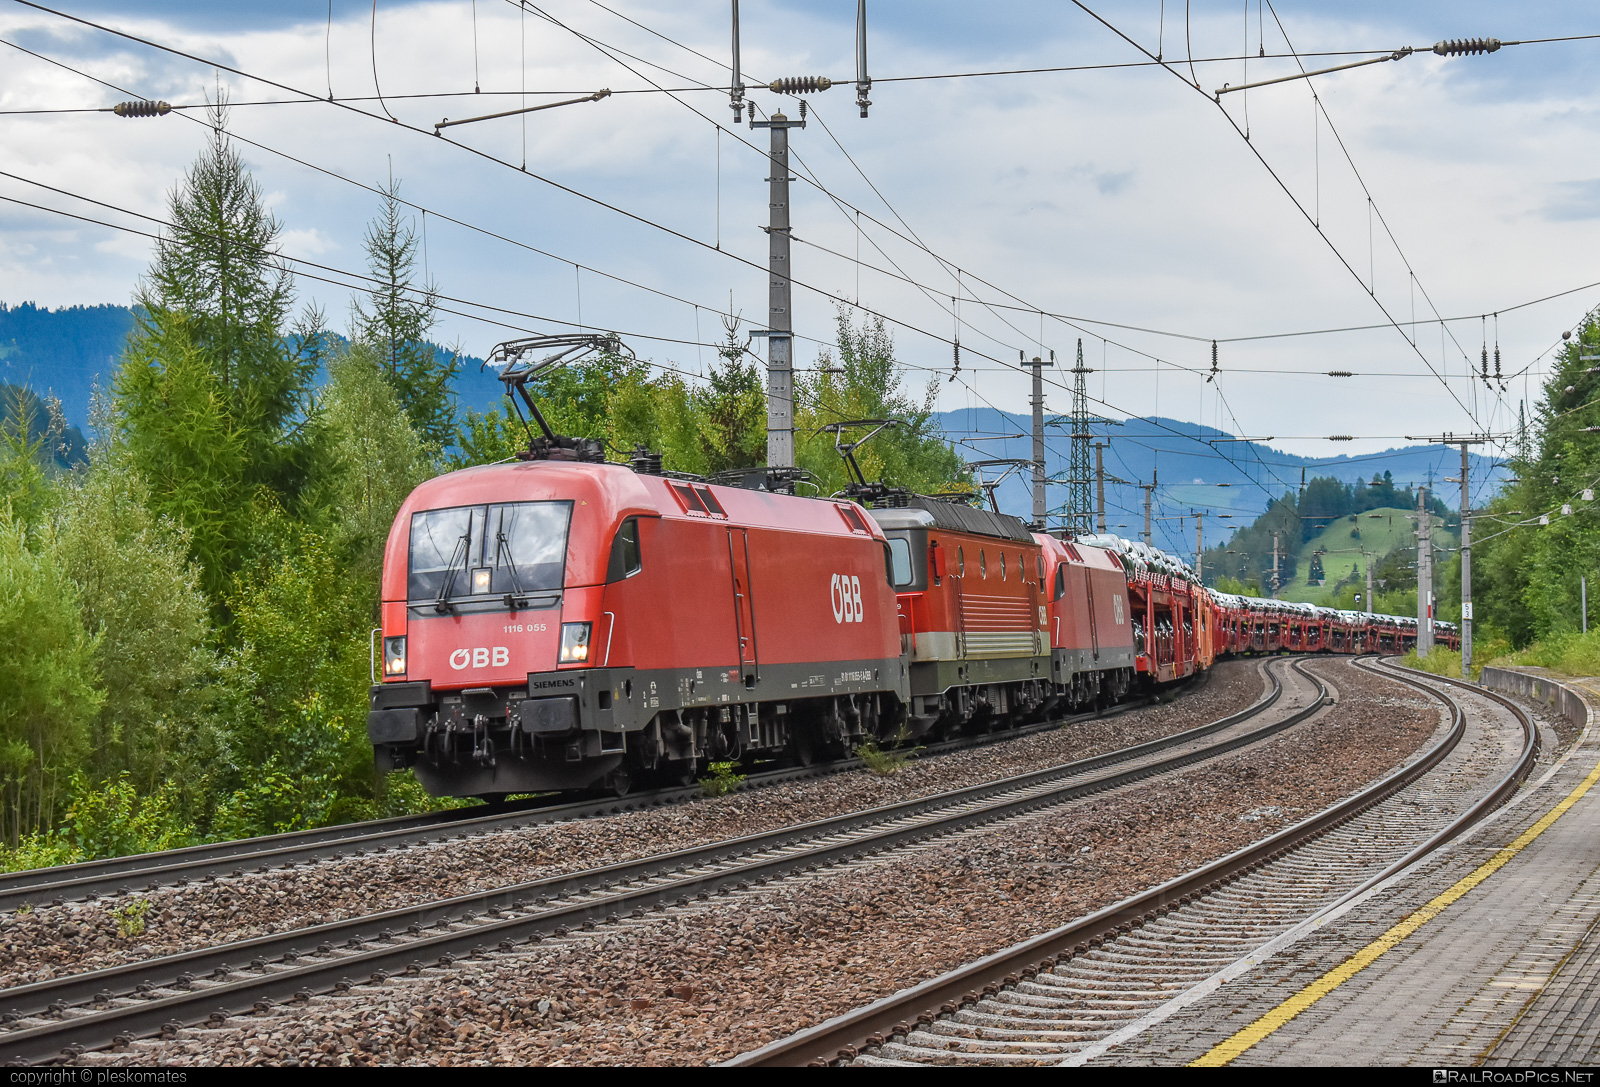 Siemens ES 64 U2 - 1116 055 operated by Rail Cargo Austria AG #carcarrierwagon #es64 #es64u2 #eurosprinter #obb #osterreichischebundesbahnen #rcw #siemens #siemensEs64 #siemensEs64u2 #siemenstaurus #taurus #tauruslocomotive